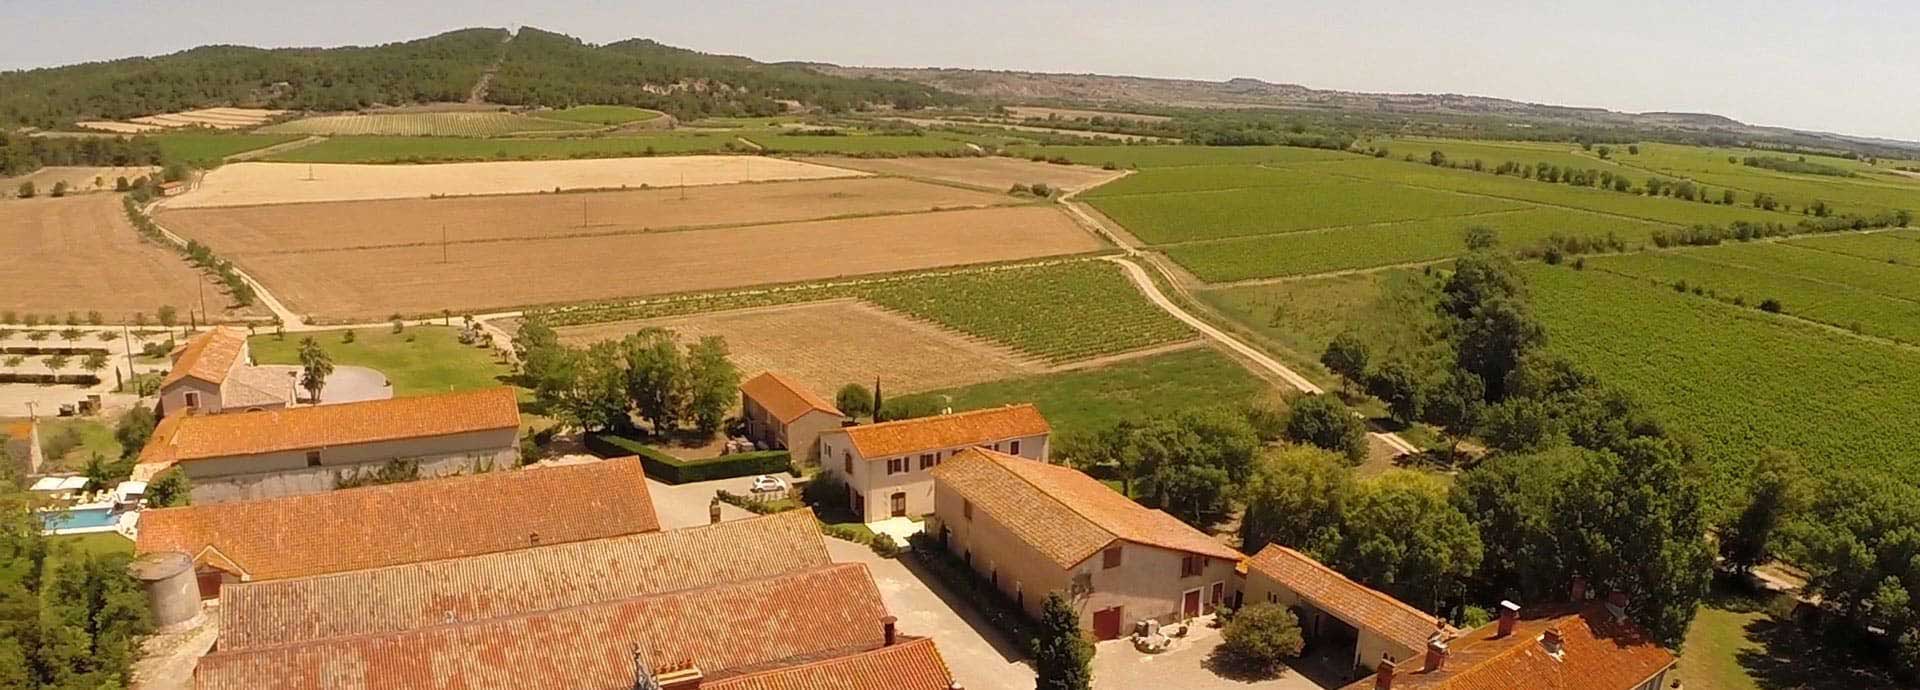 Luchtfoto van Domaine de la Vernède, vakantieaccommodatie in de Hérault